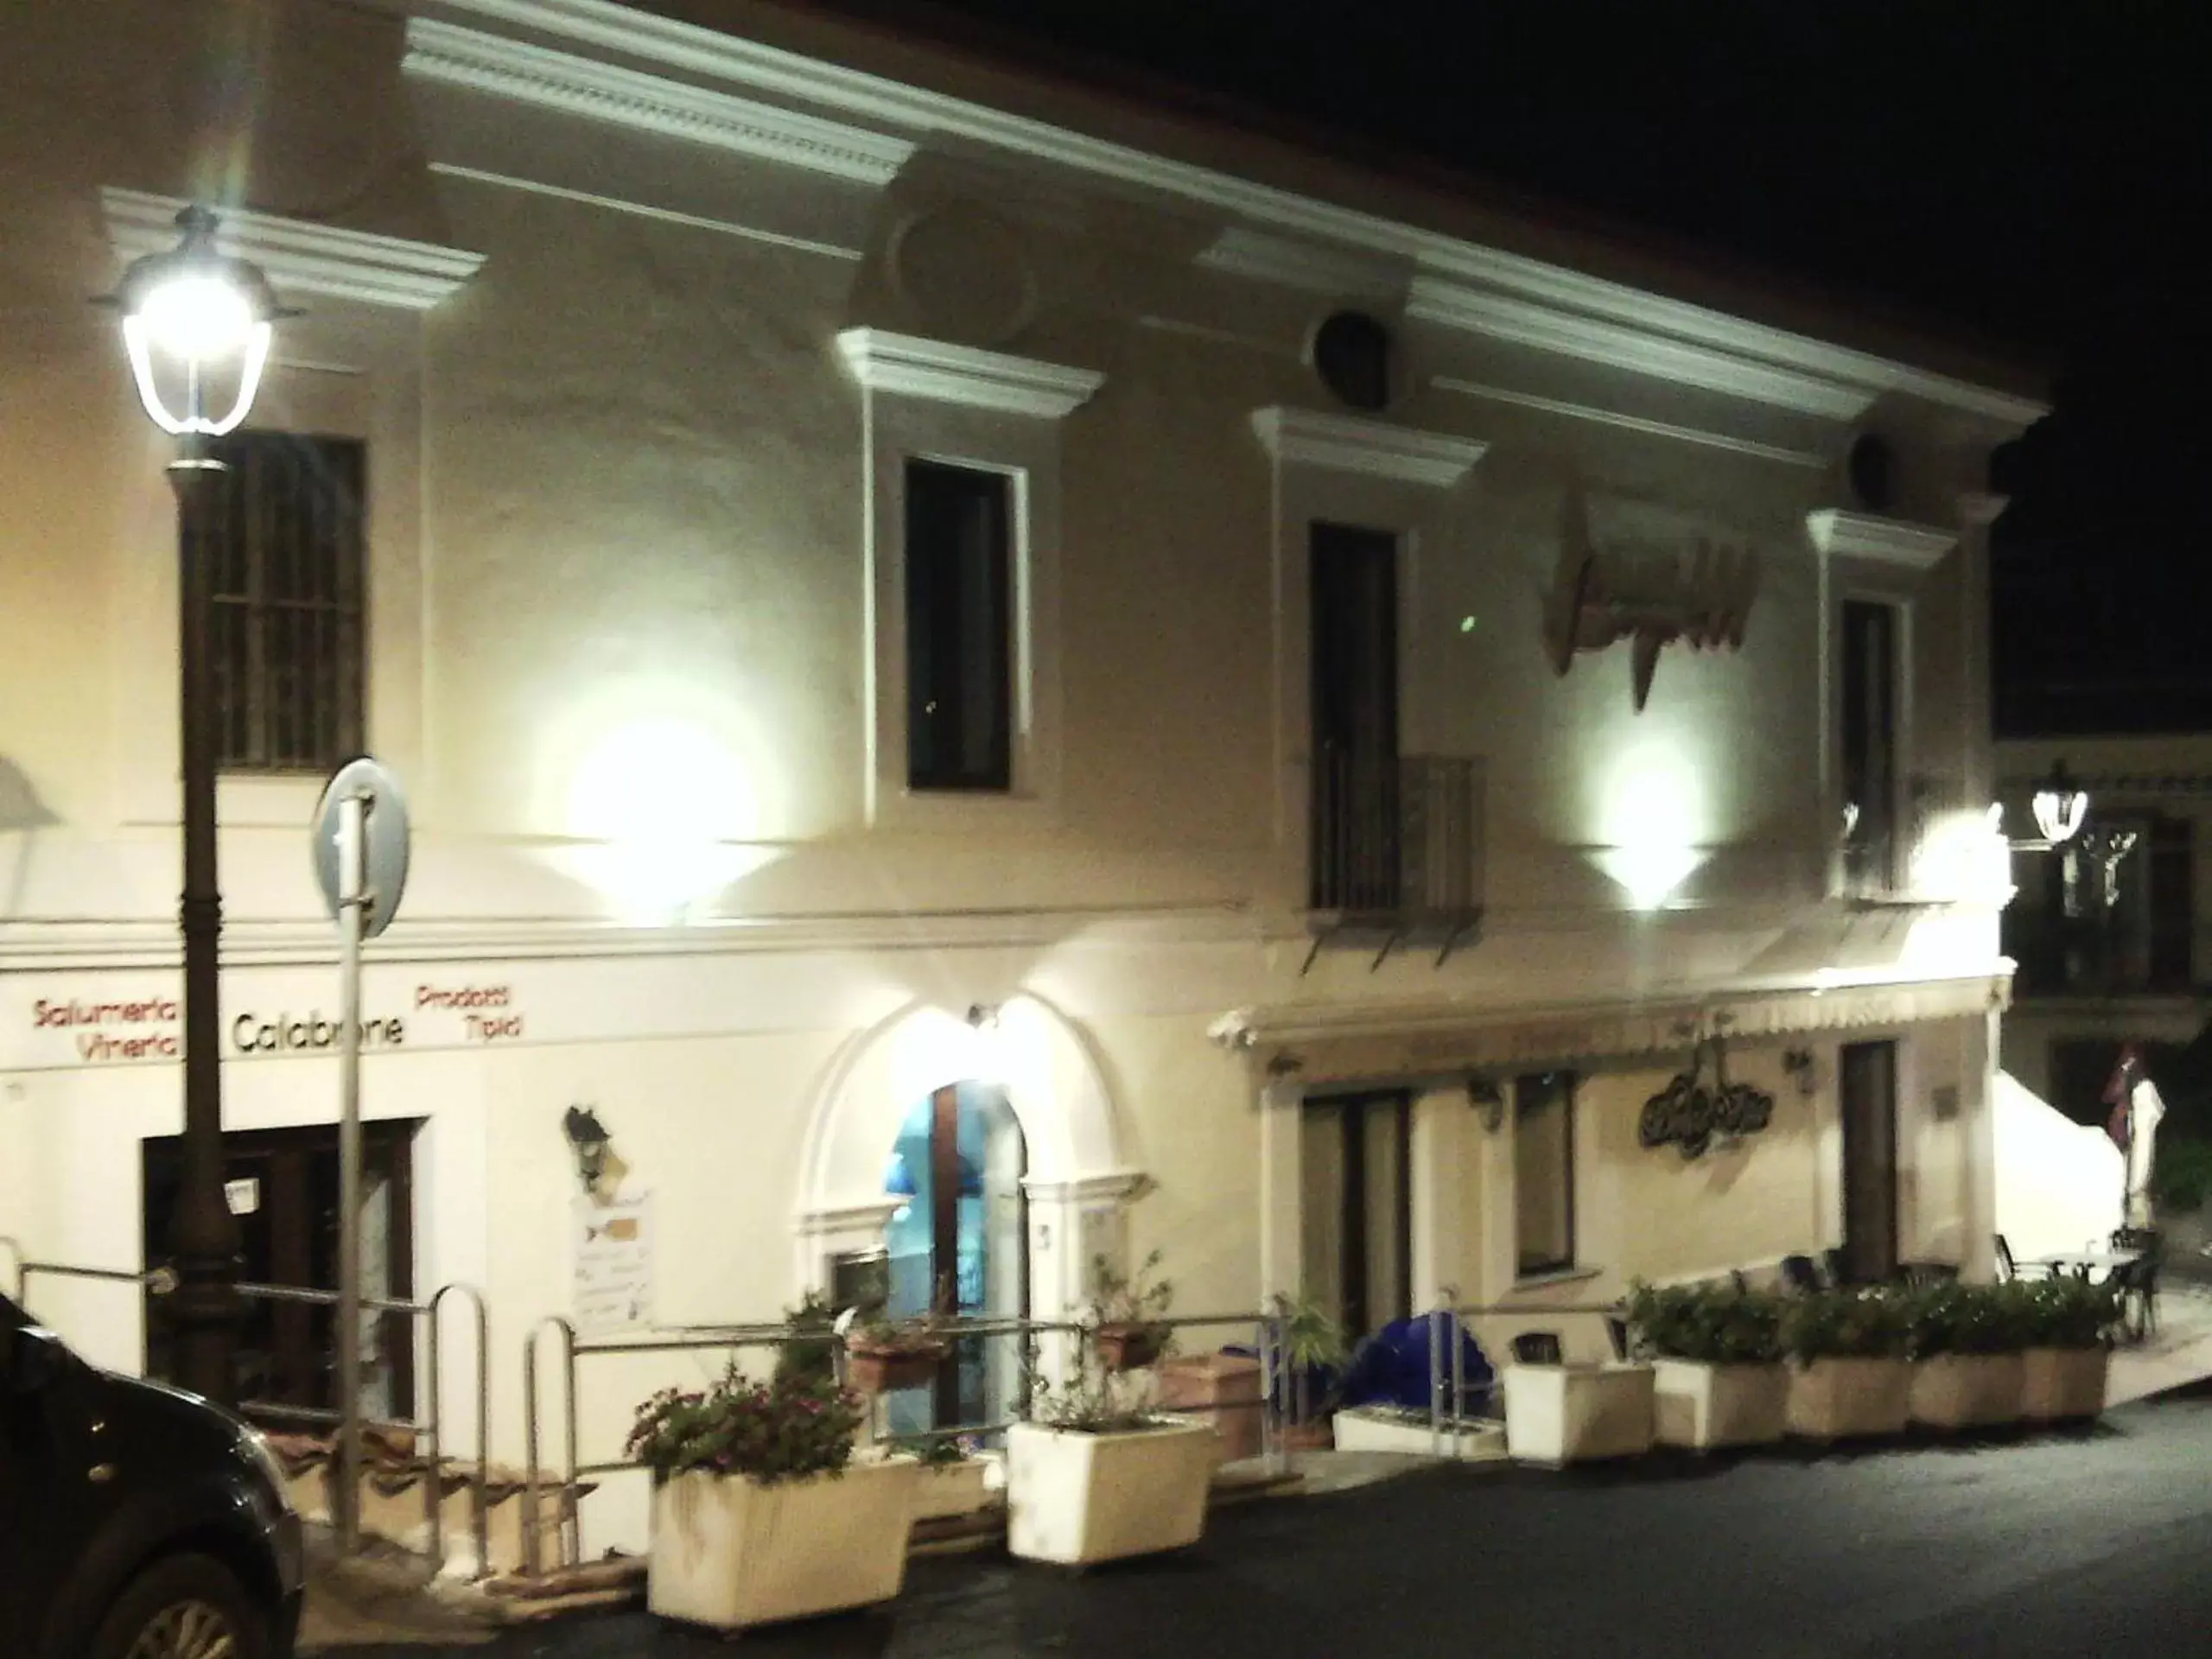 Property building, Facade/Entrance in Borgo 800